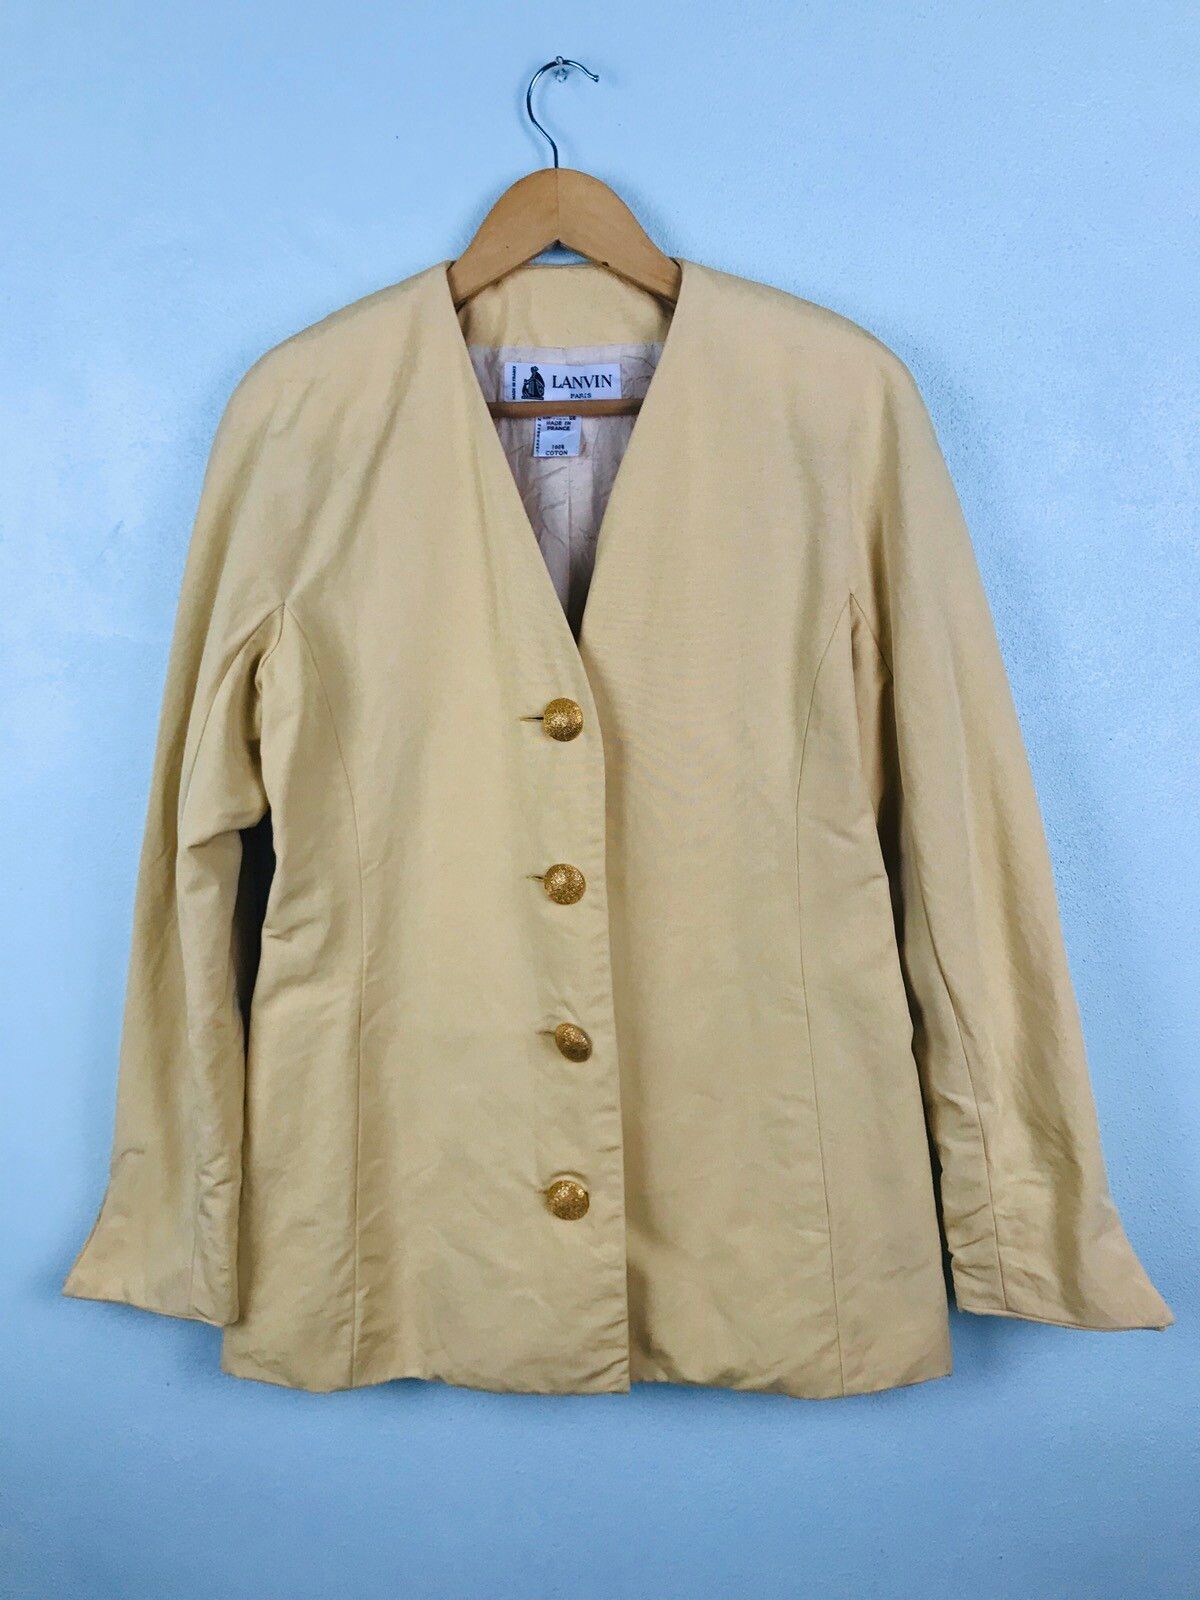 Lanvin Paris jacket with gold button - gh1519 - 1